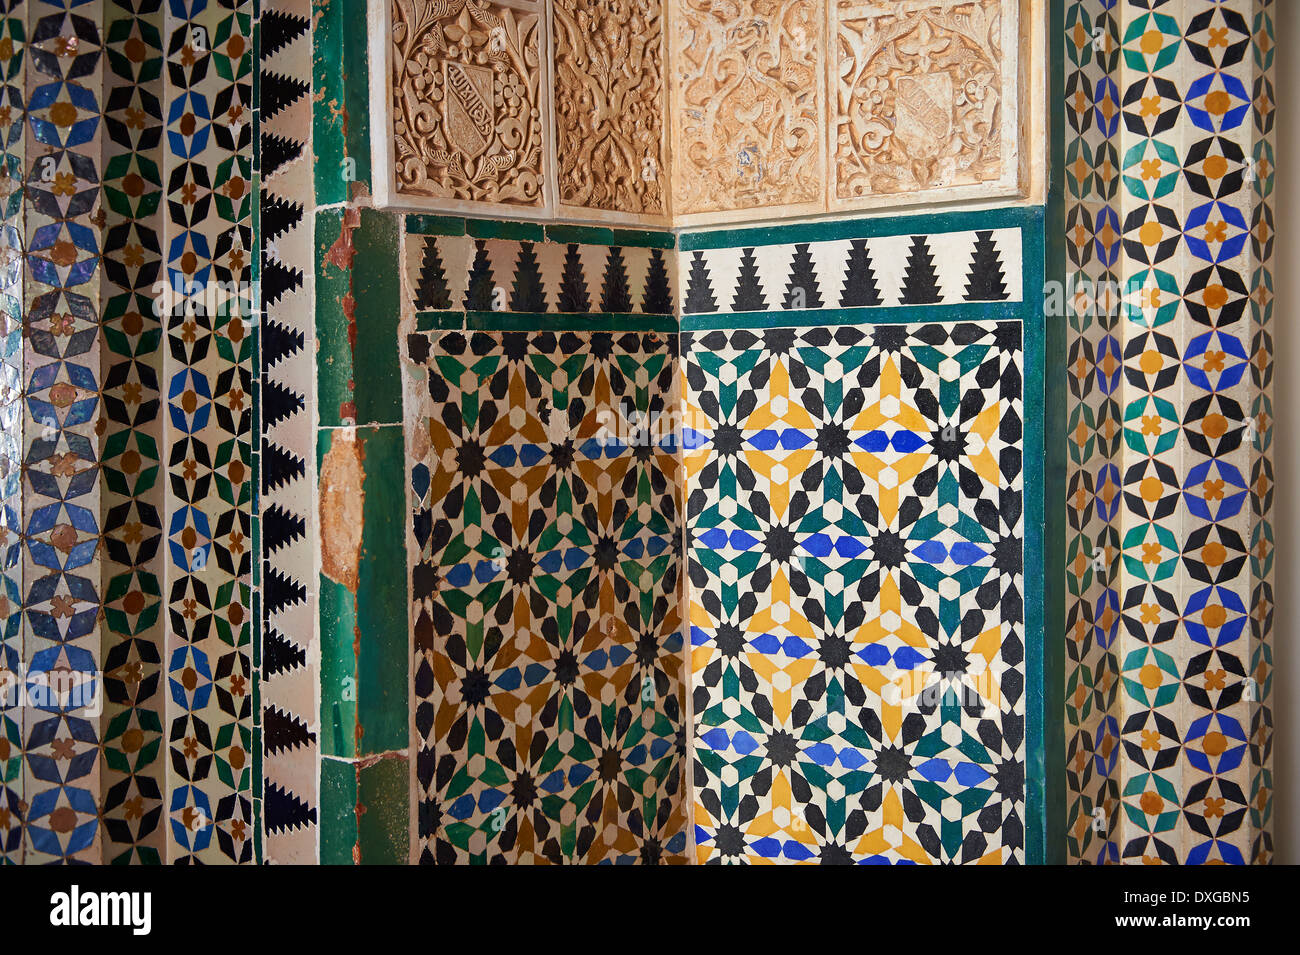 Les carreaux de céramique arabesque mauresque de l'Palacios Nazaries, à l'Alhambra. Grenade, Andalousie, espagne. Banque D'Images